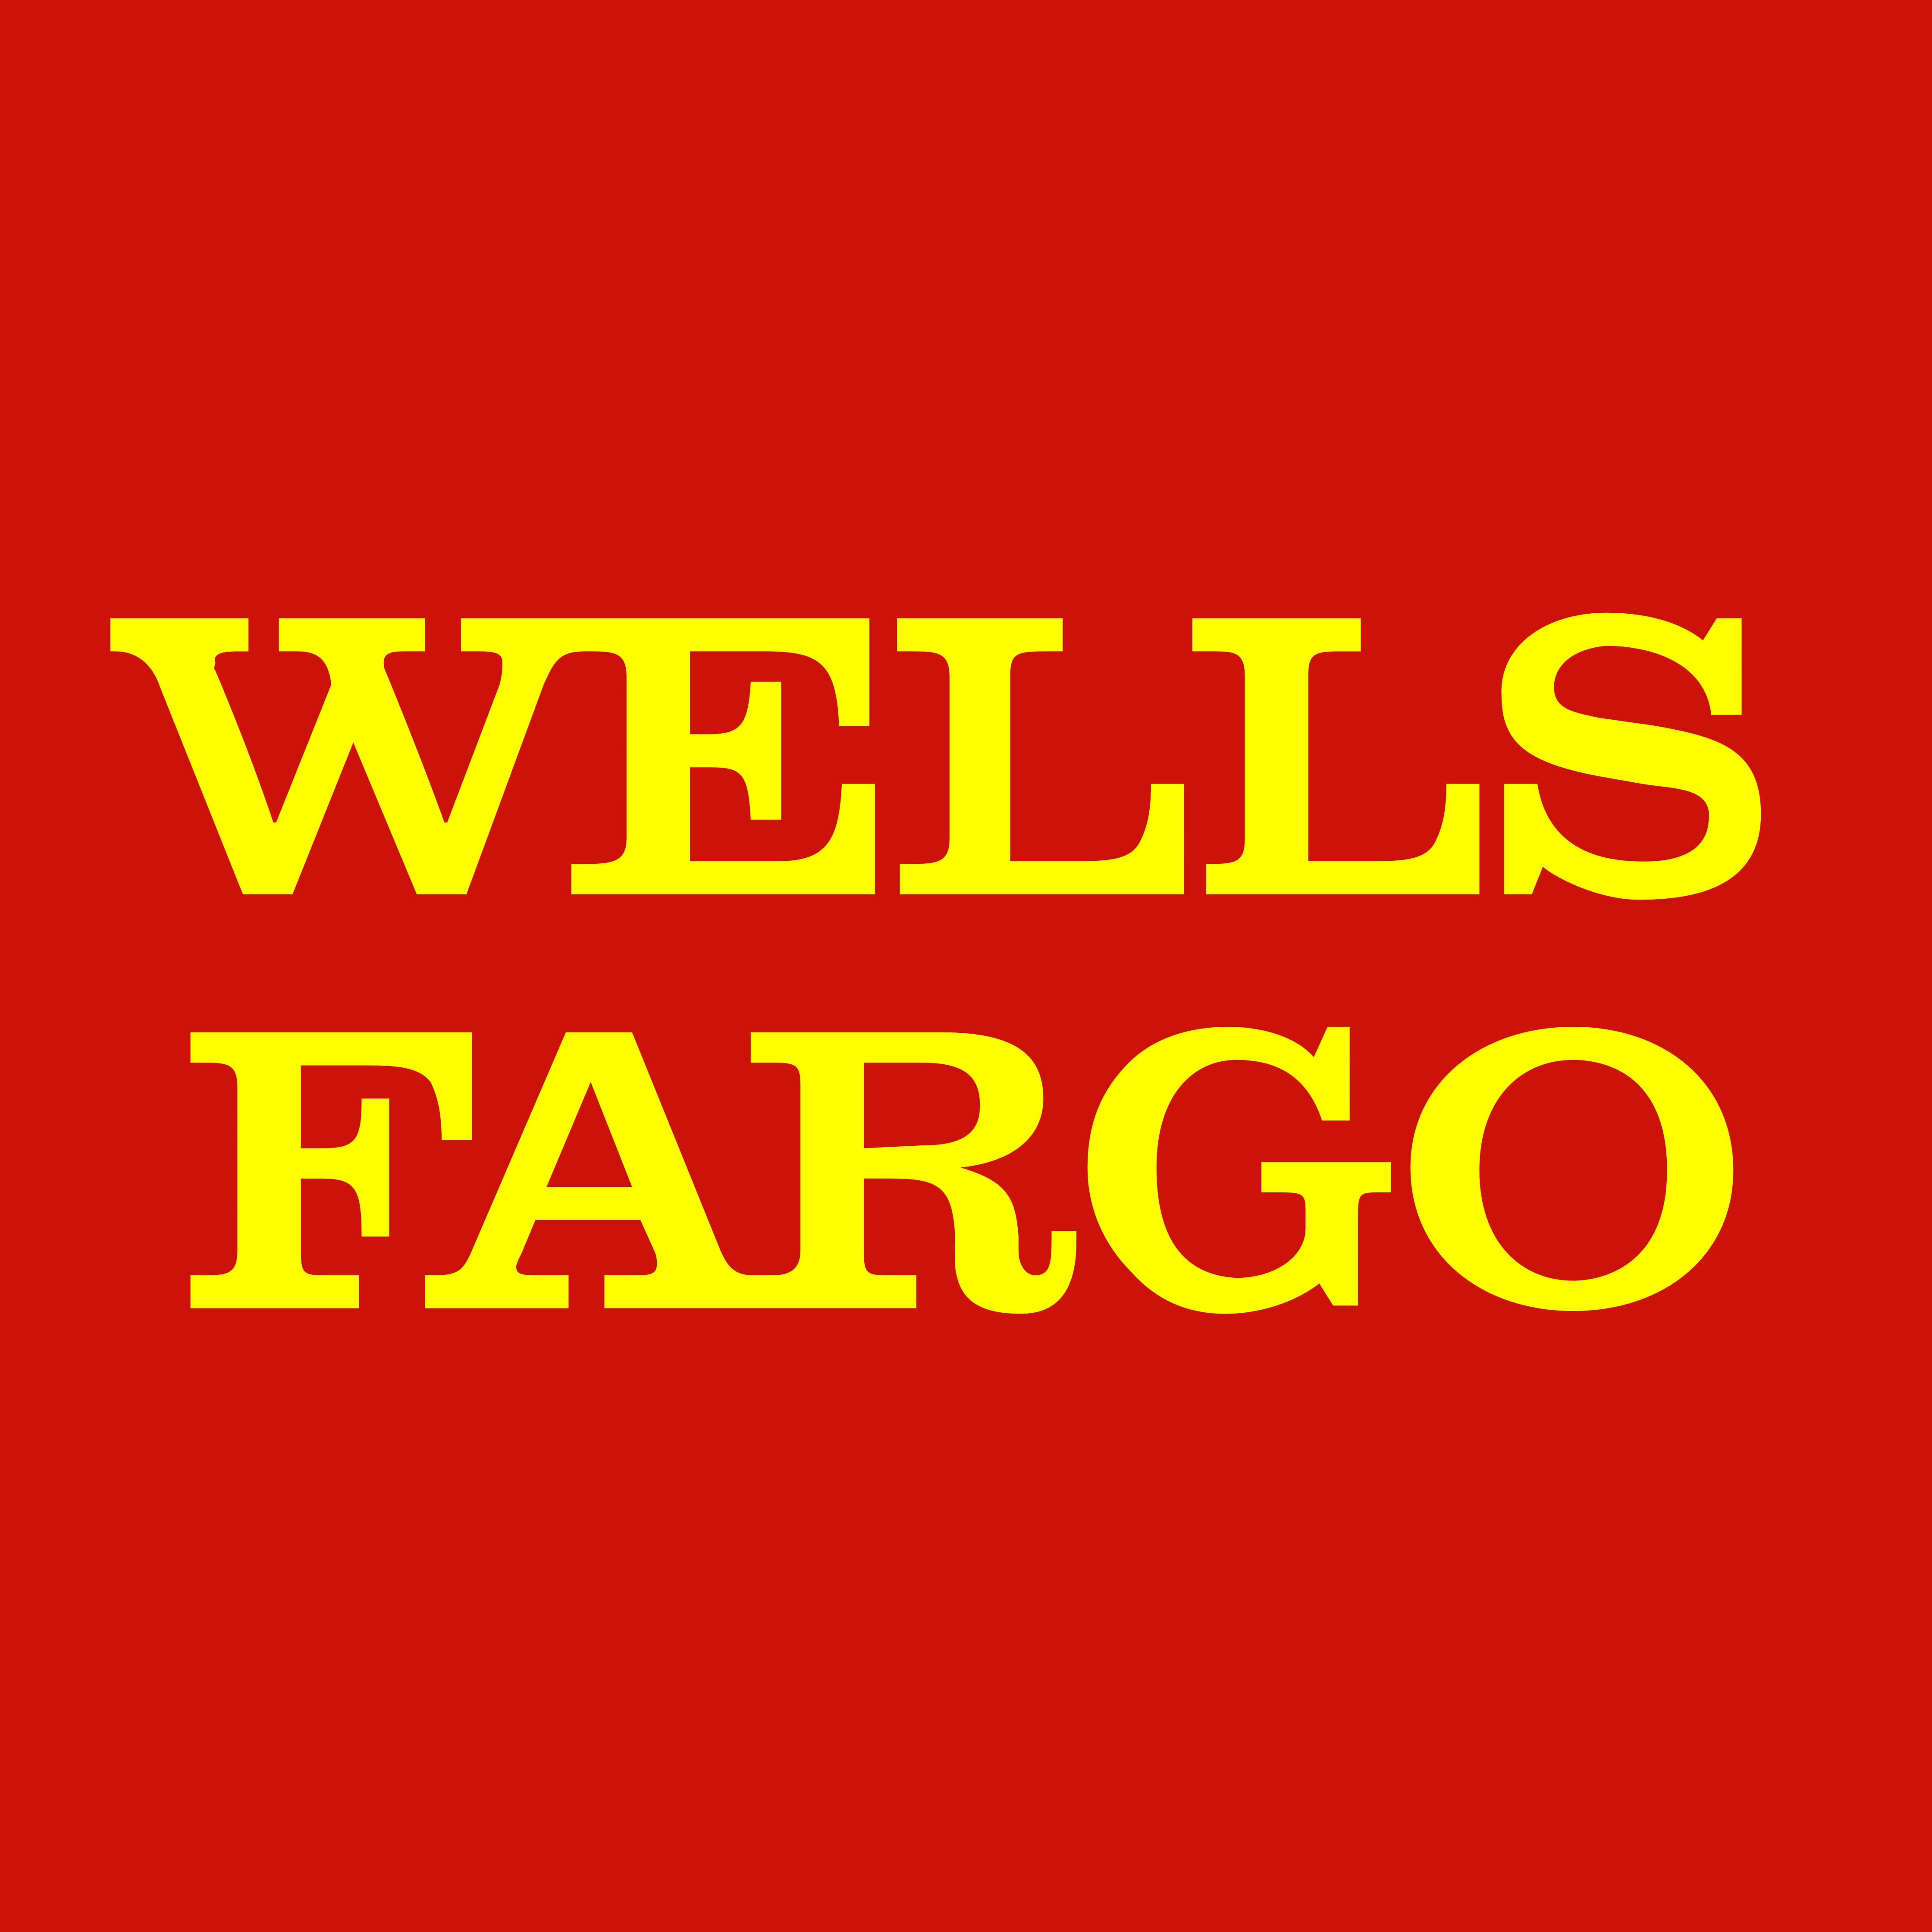 wells-fargo-bank-logos-download